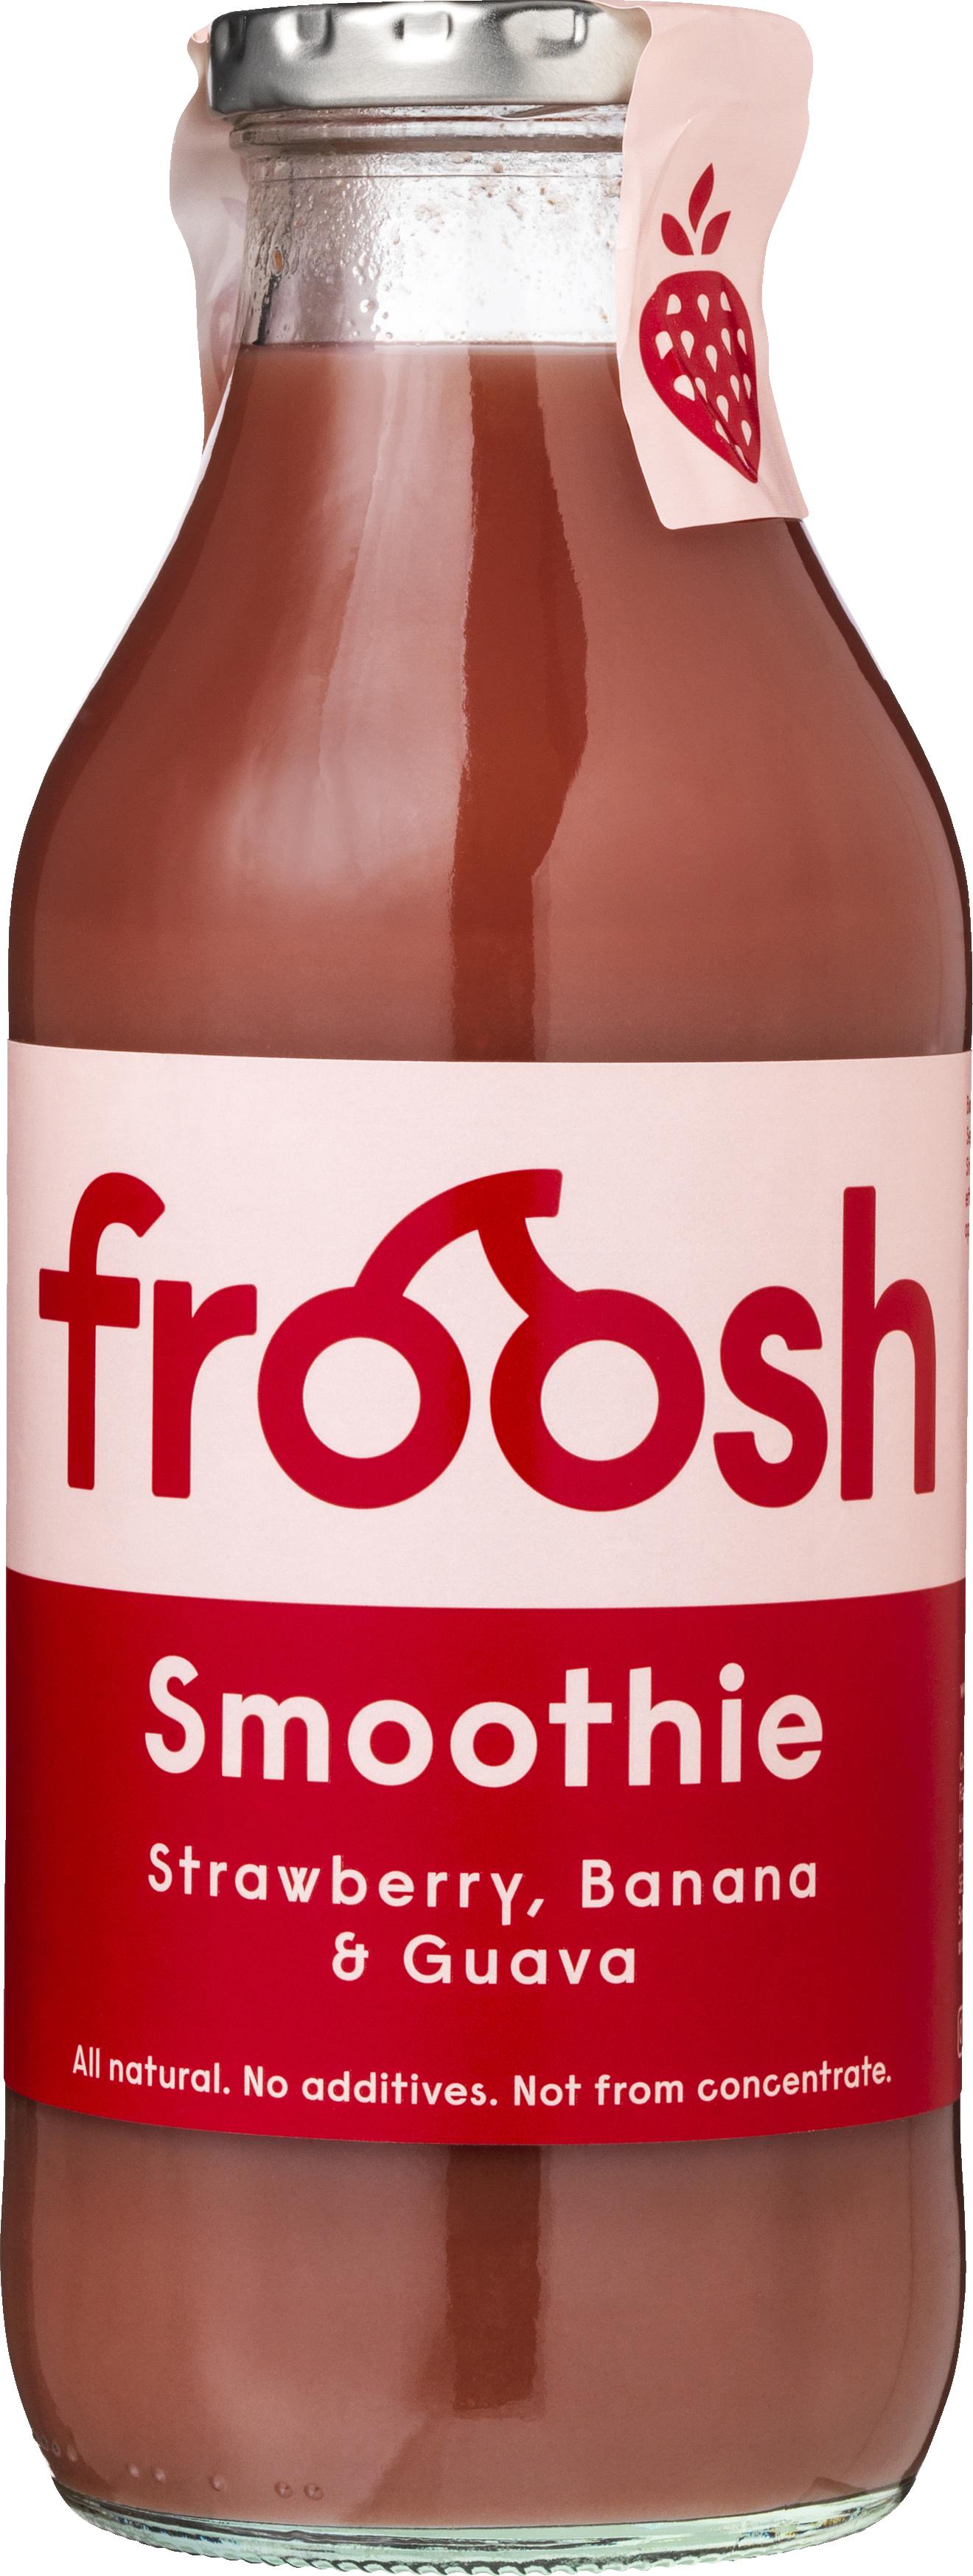 Froosh Jordbær/Banan/Guava Smoothie 750 ml. - SMOOTHIE - VIN MED MERE .DK